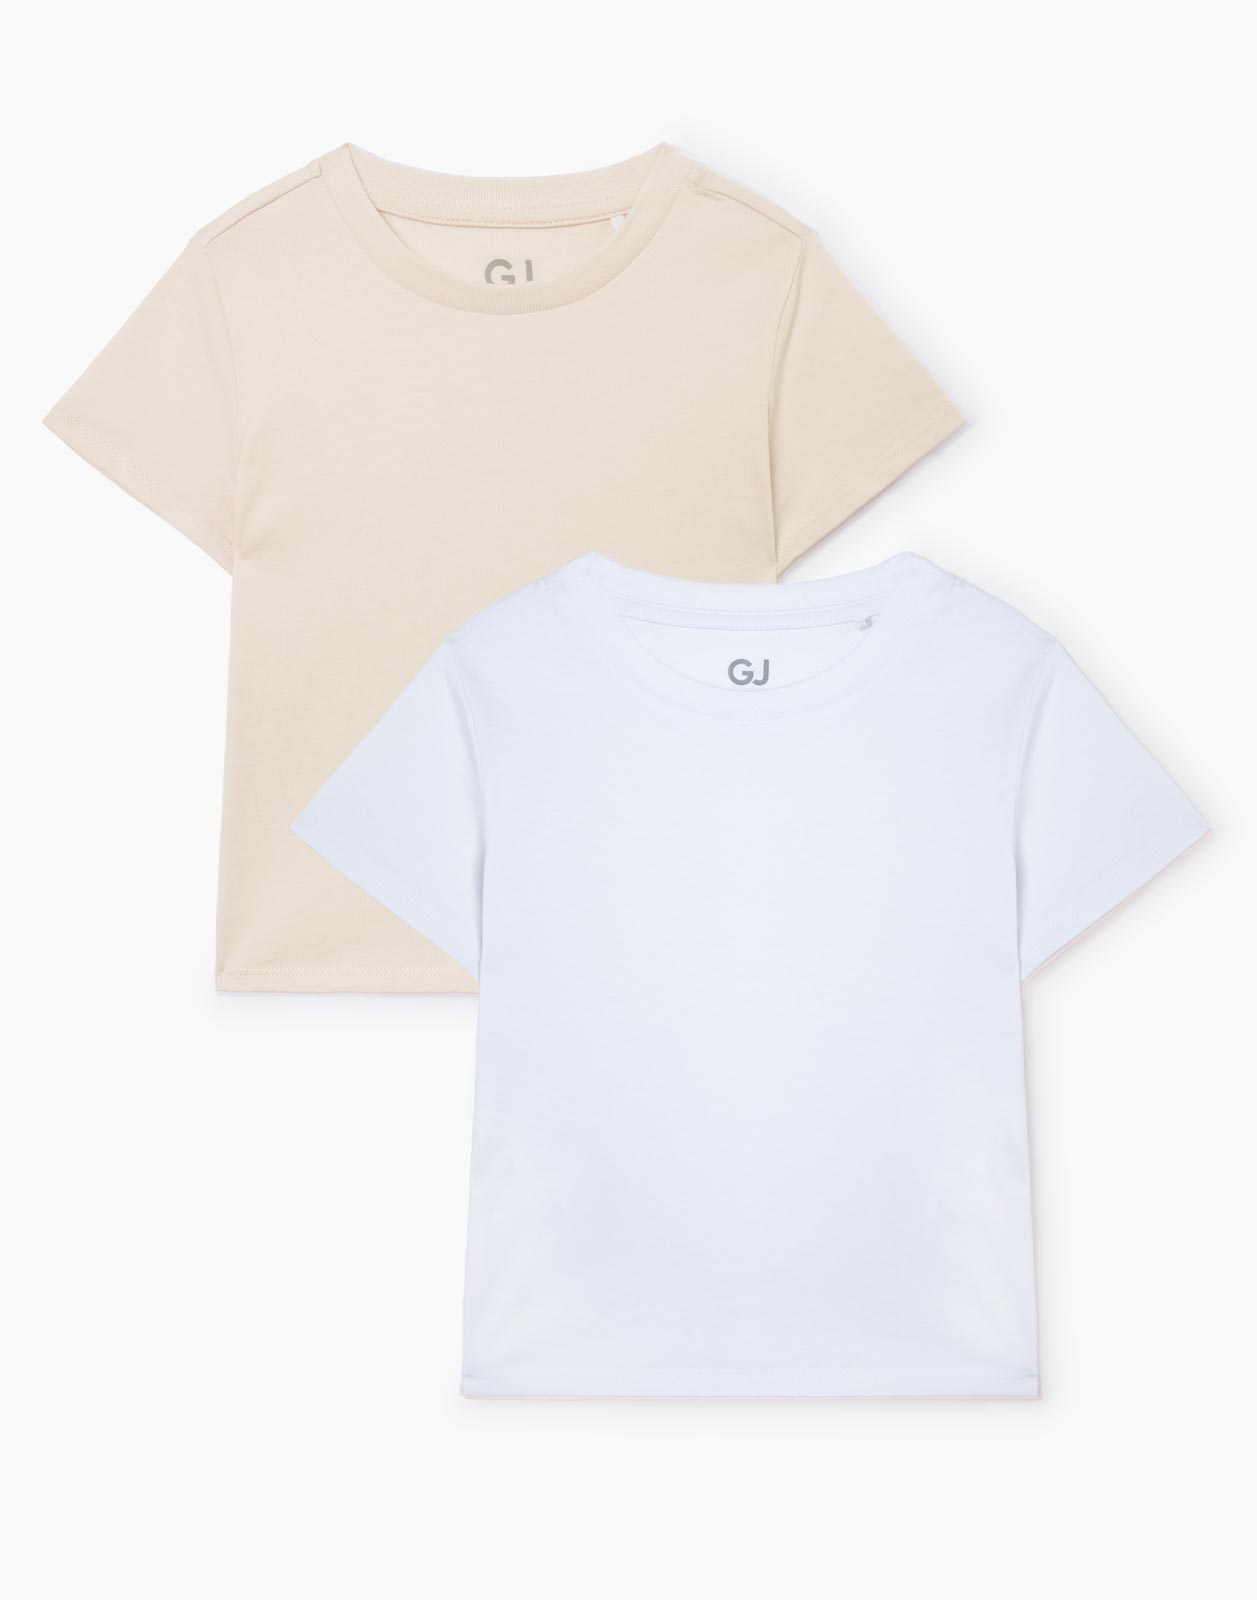 Комплект футболок Gloria Jeans GSE001398 разноцветный 12мес/80 для девочки